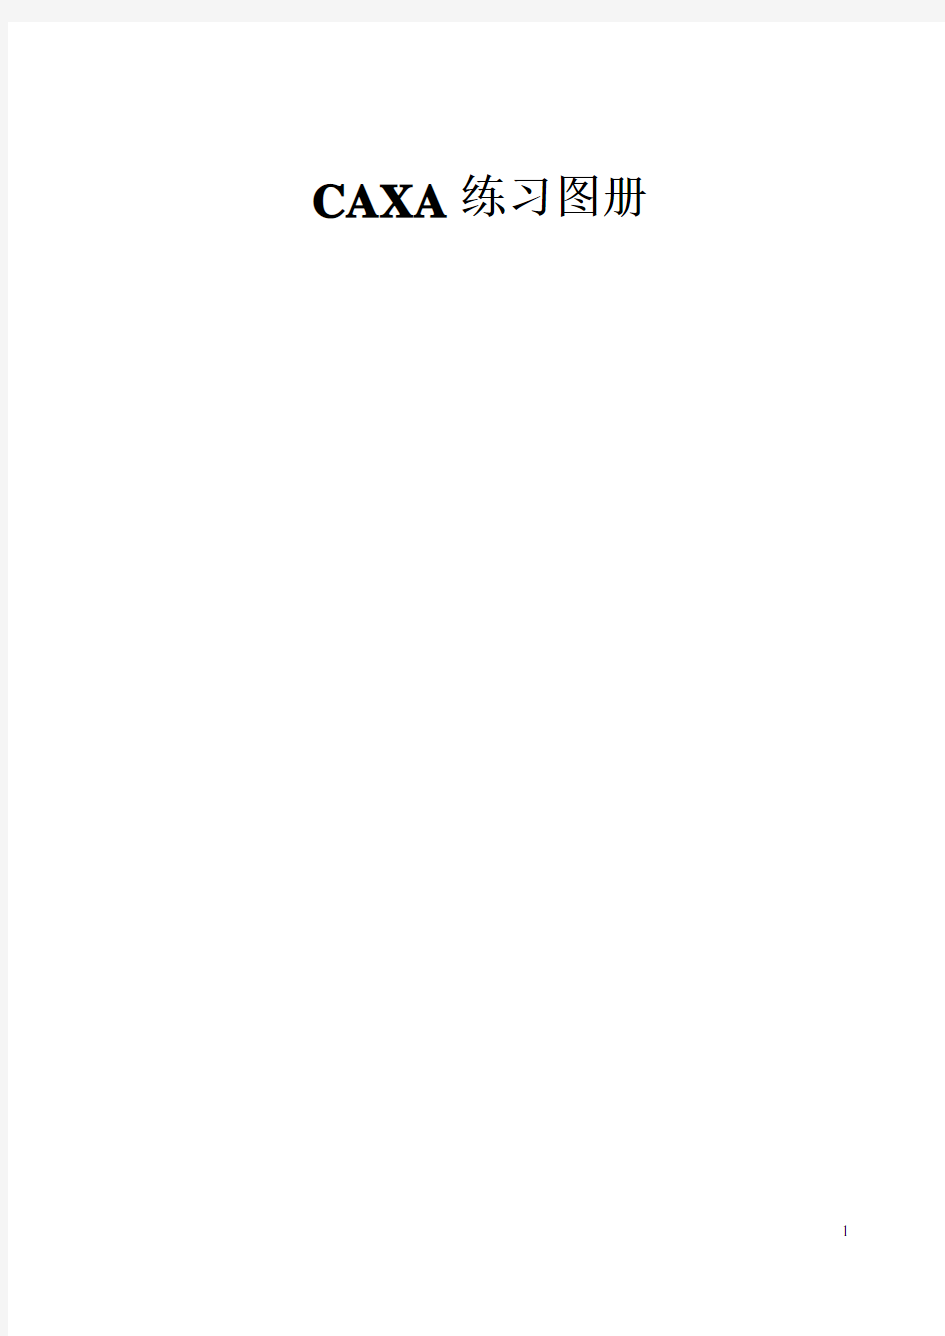 CAXA练习图册